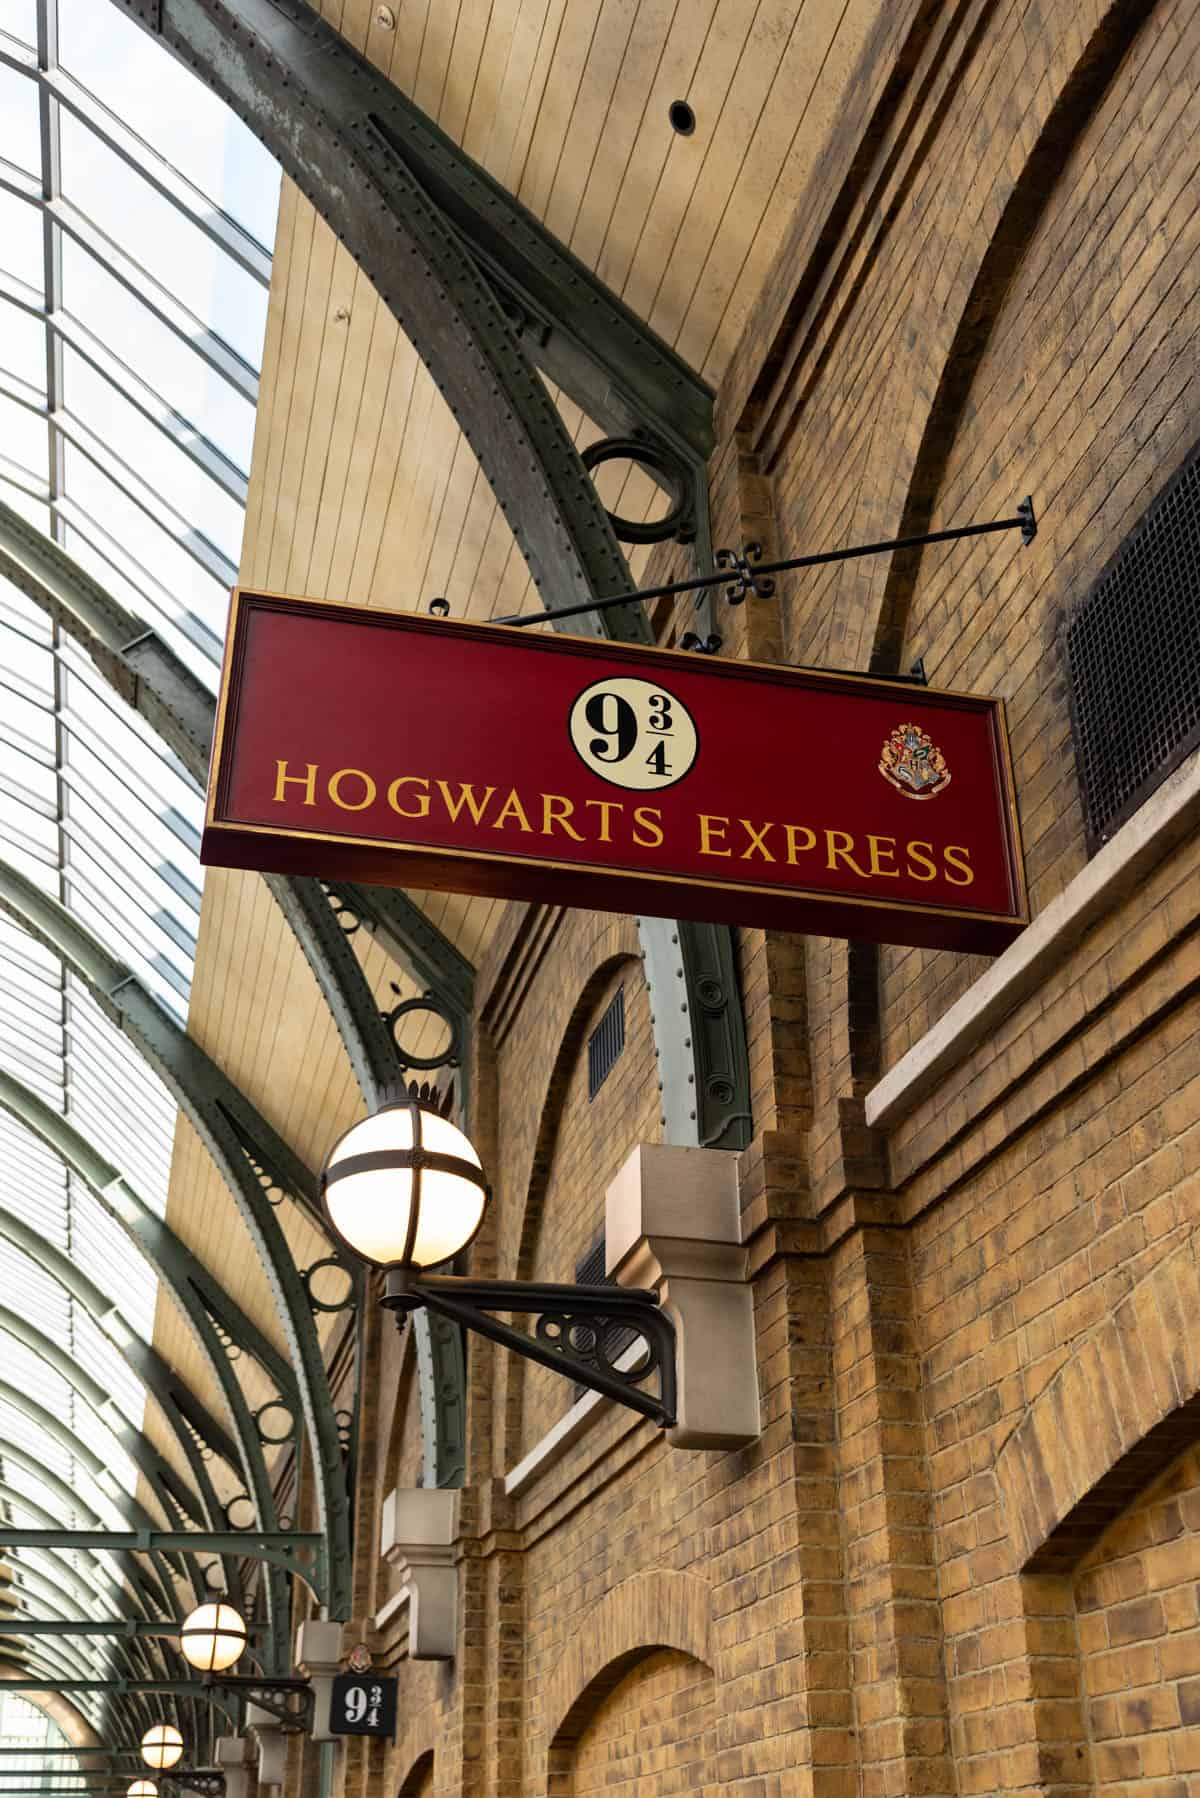 An image of the Hogwarts Express sign on Platform 9 ¾.